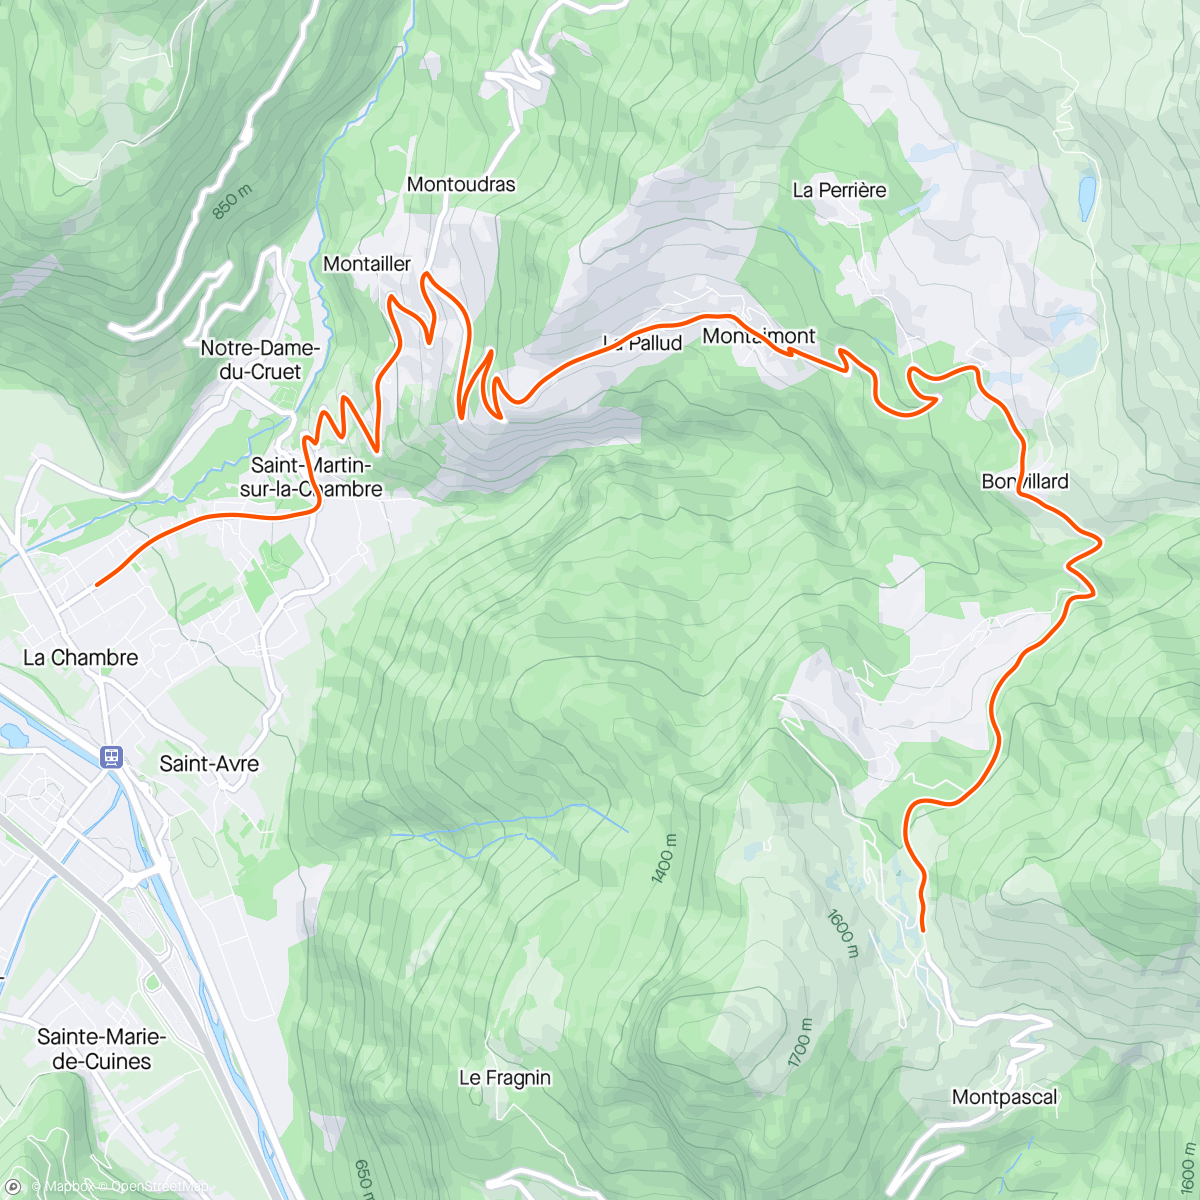 アクティビティ「Kinomap - 😍⛰ Scenic downhill from Col de Chaussy (🇫🇷)」の地図